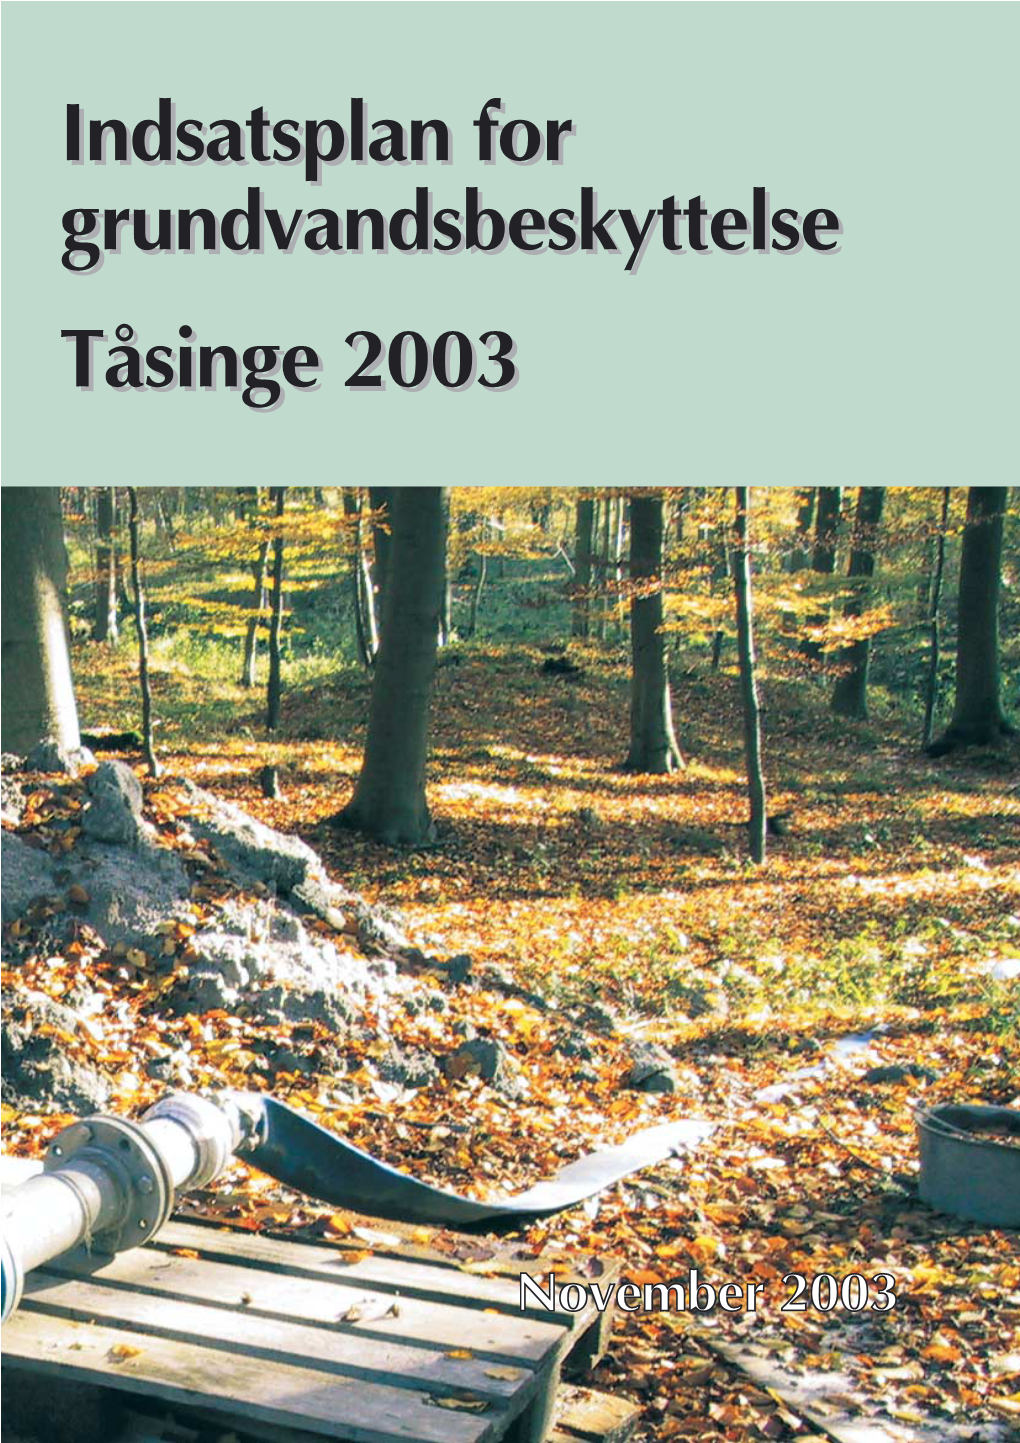 Indsatsplan for Grundvandsbeskyttelse Tåsinge 2003